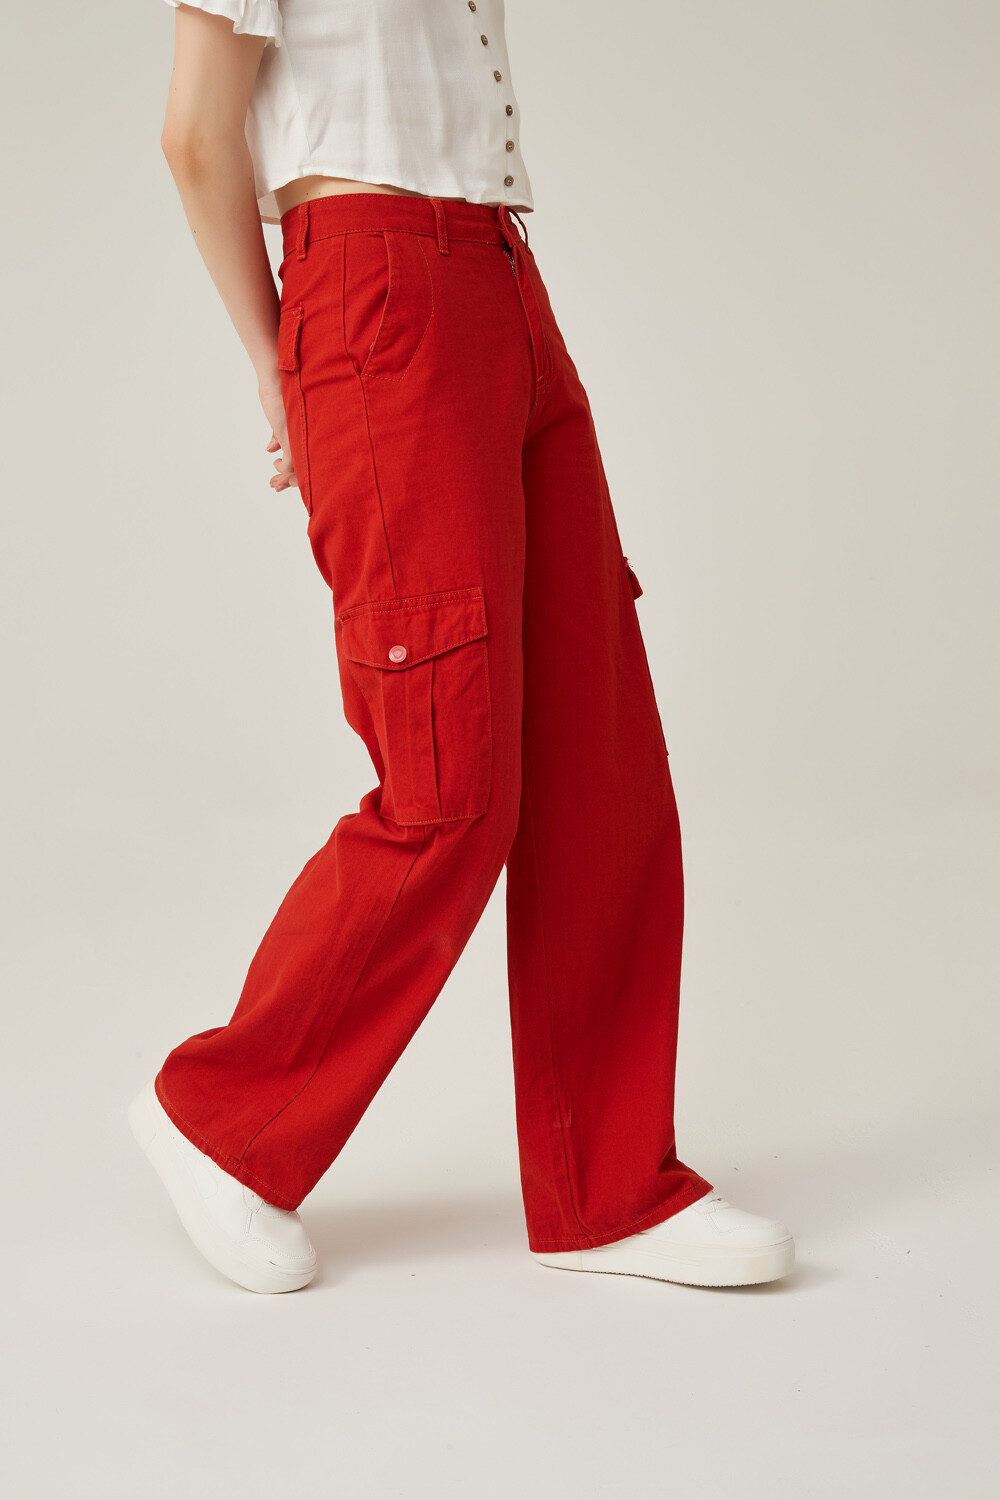 Pantalon Melipeuco Rojo